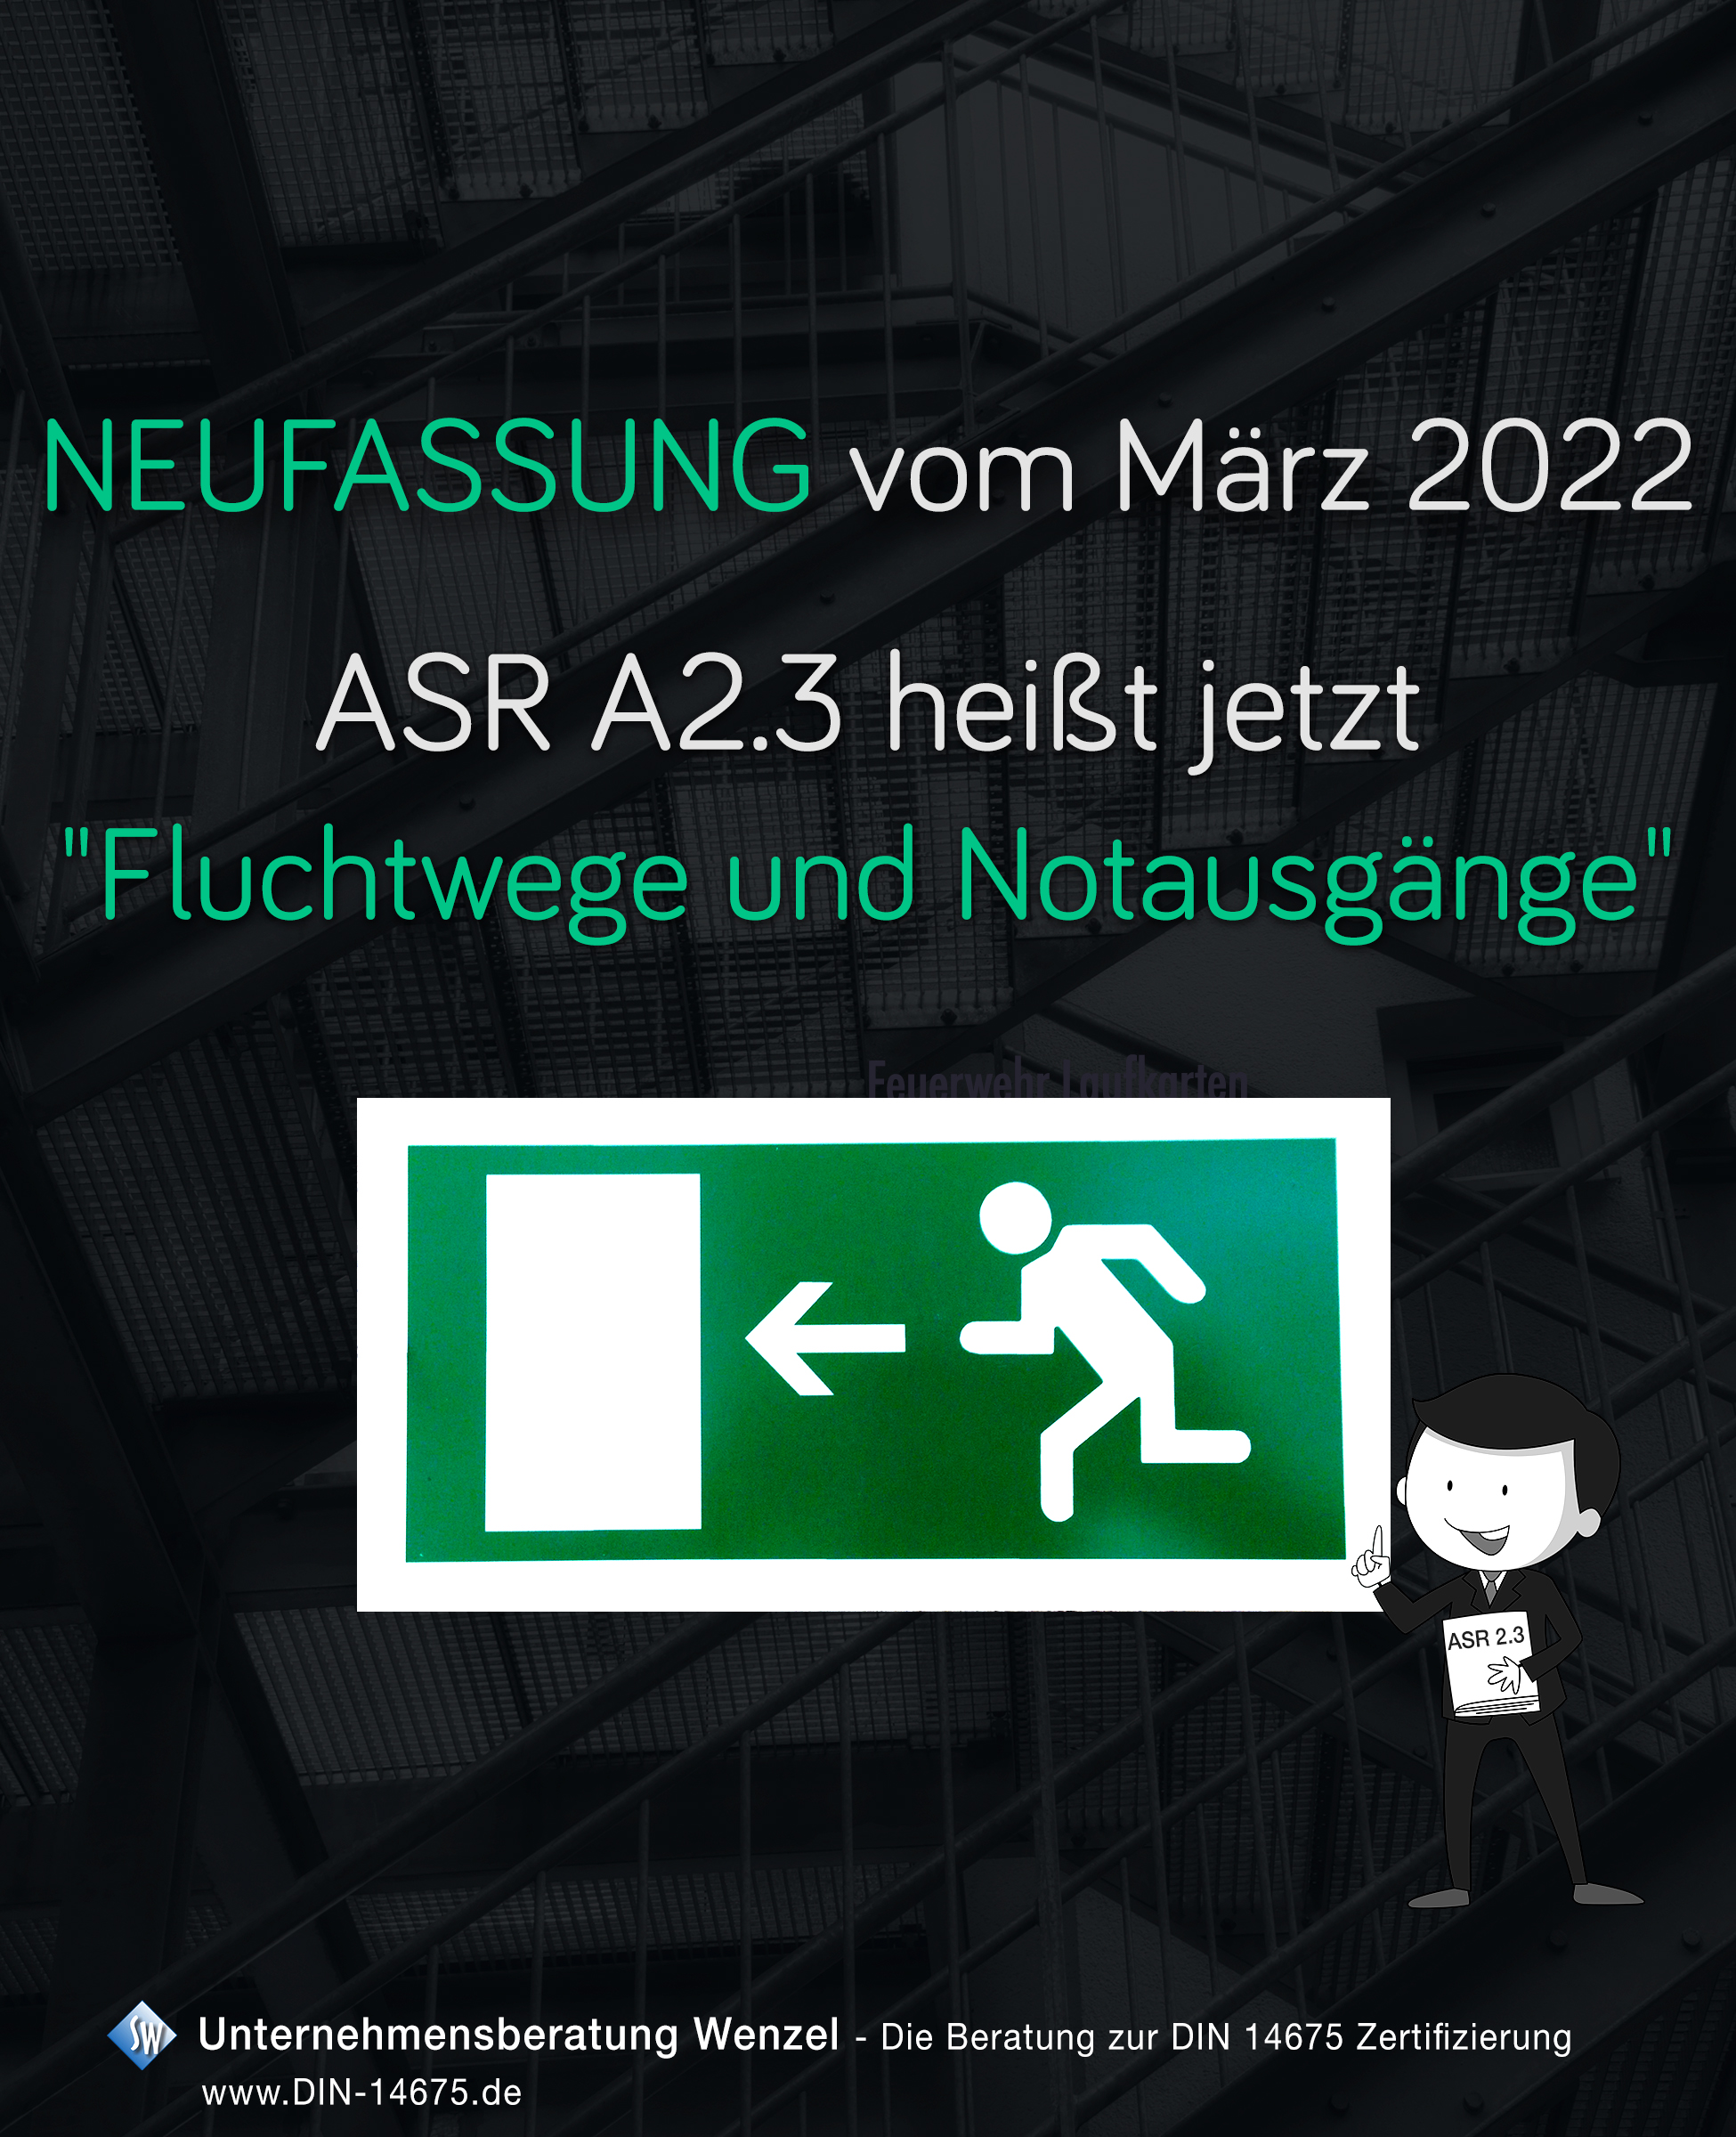 Im März 2022 ist die aktualisierte ASR A2.3 erschienen, nun unter dem geänderten Titel "Fluchtwege und Notausgänge" und ersetzt somit die ASR A2.3 vom August 2007.